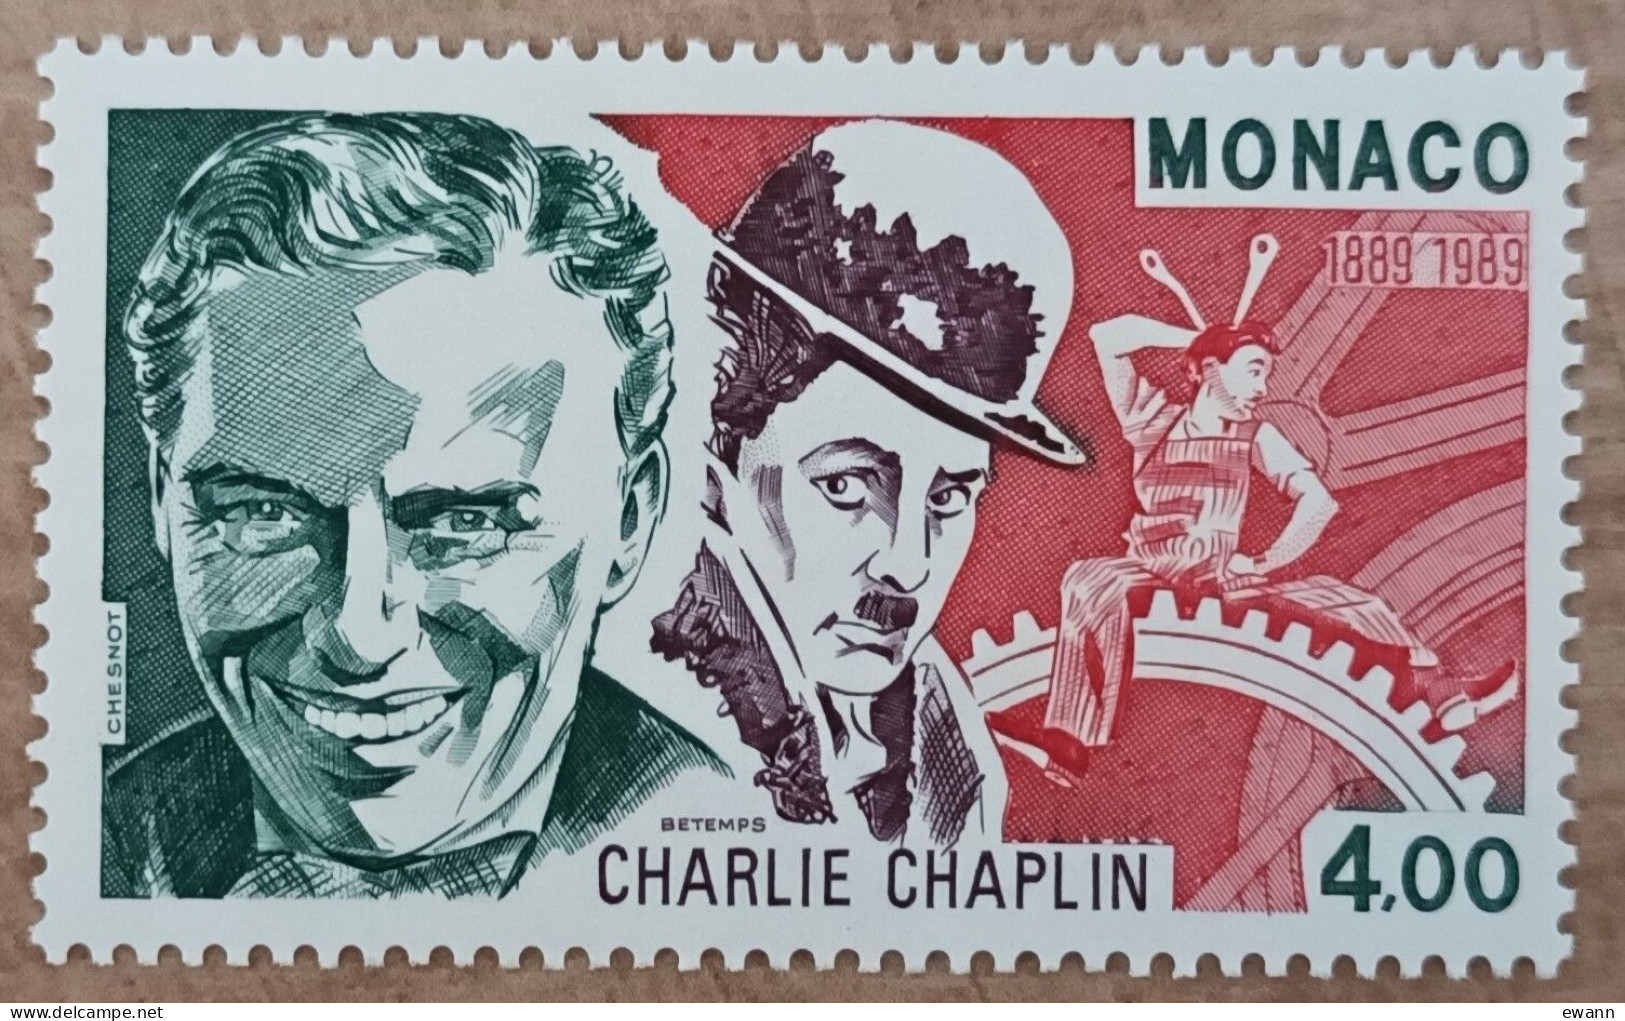 Monaco - YT N°1680 - Charlie Chaplin - 1989 - Neuf - Unused Stamps